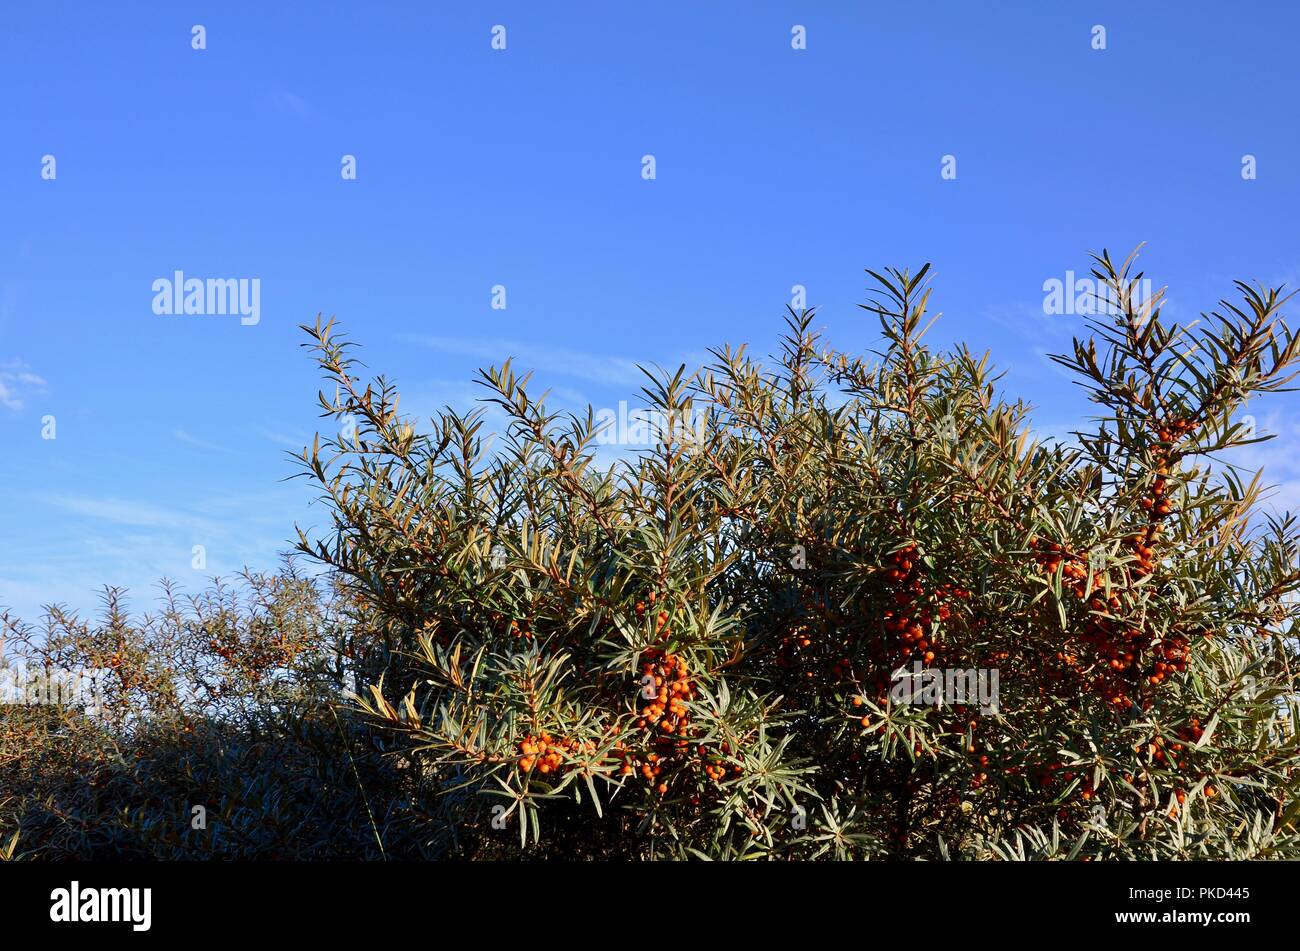 L'argousier commun ou Hippophae rhamnoides. Les baies mûres sur les dunes de sable sur fond de ciel bleu, Rimac Nature Reserve, Lincolnshire coast, en Angleterre. Banque D'Images